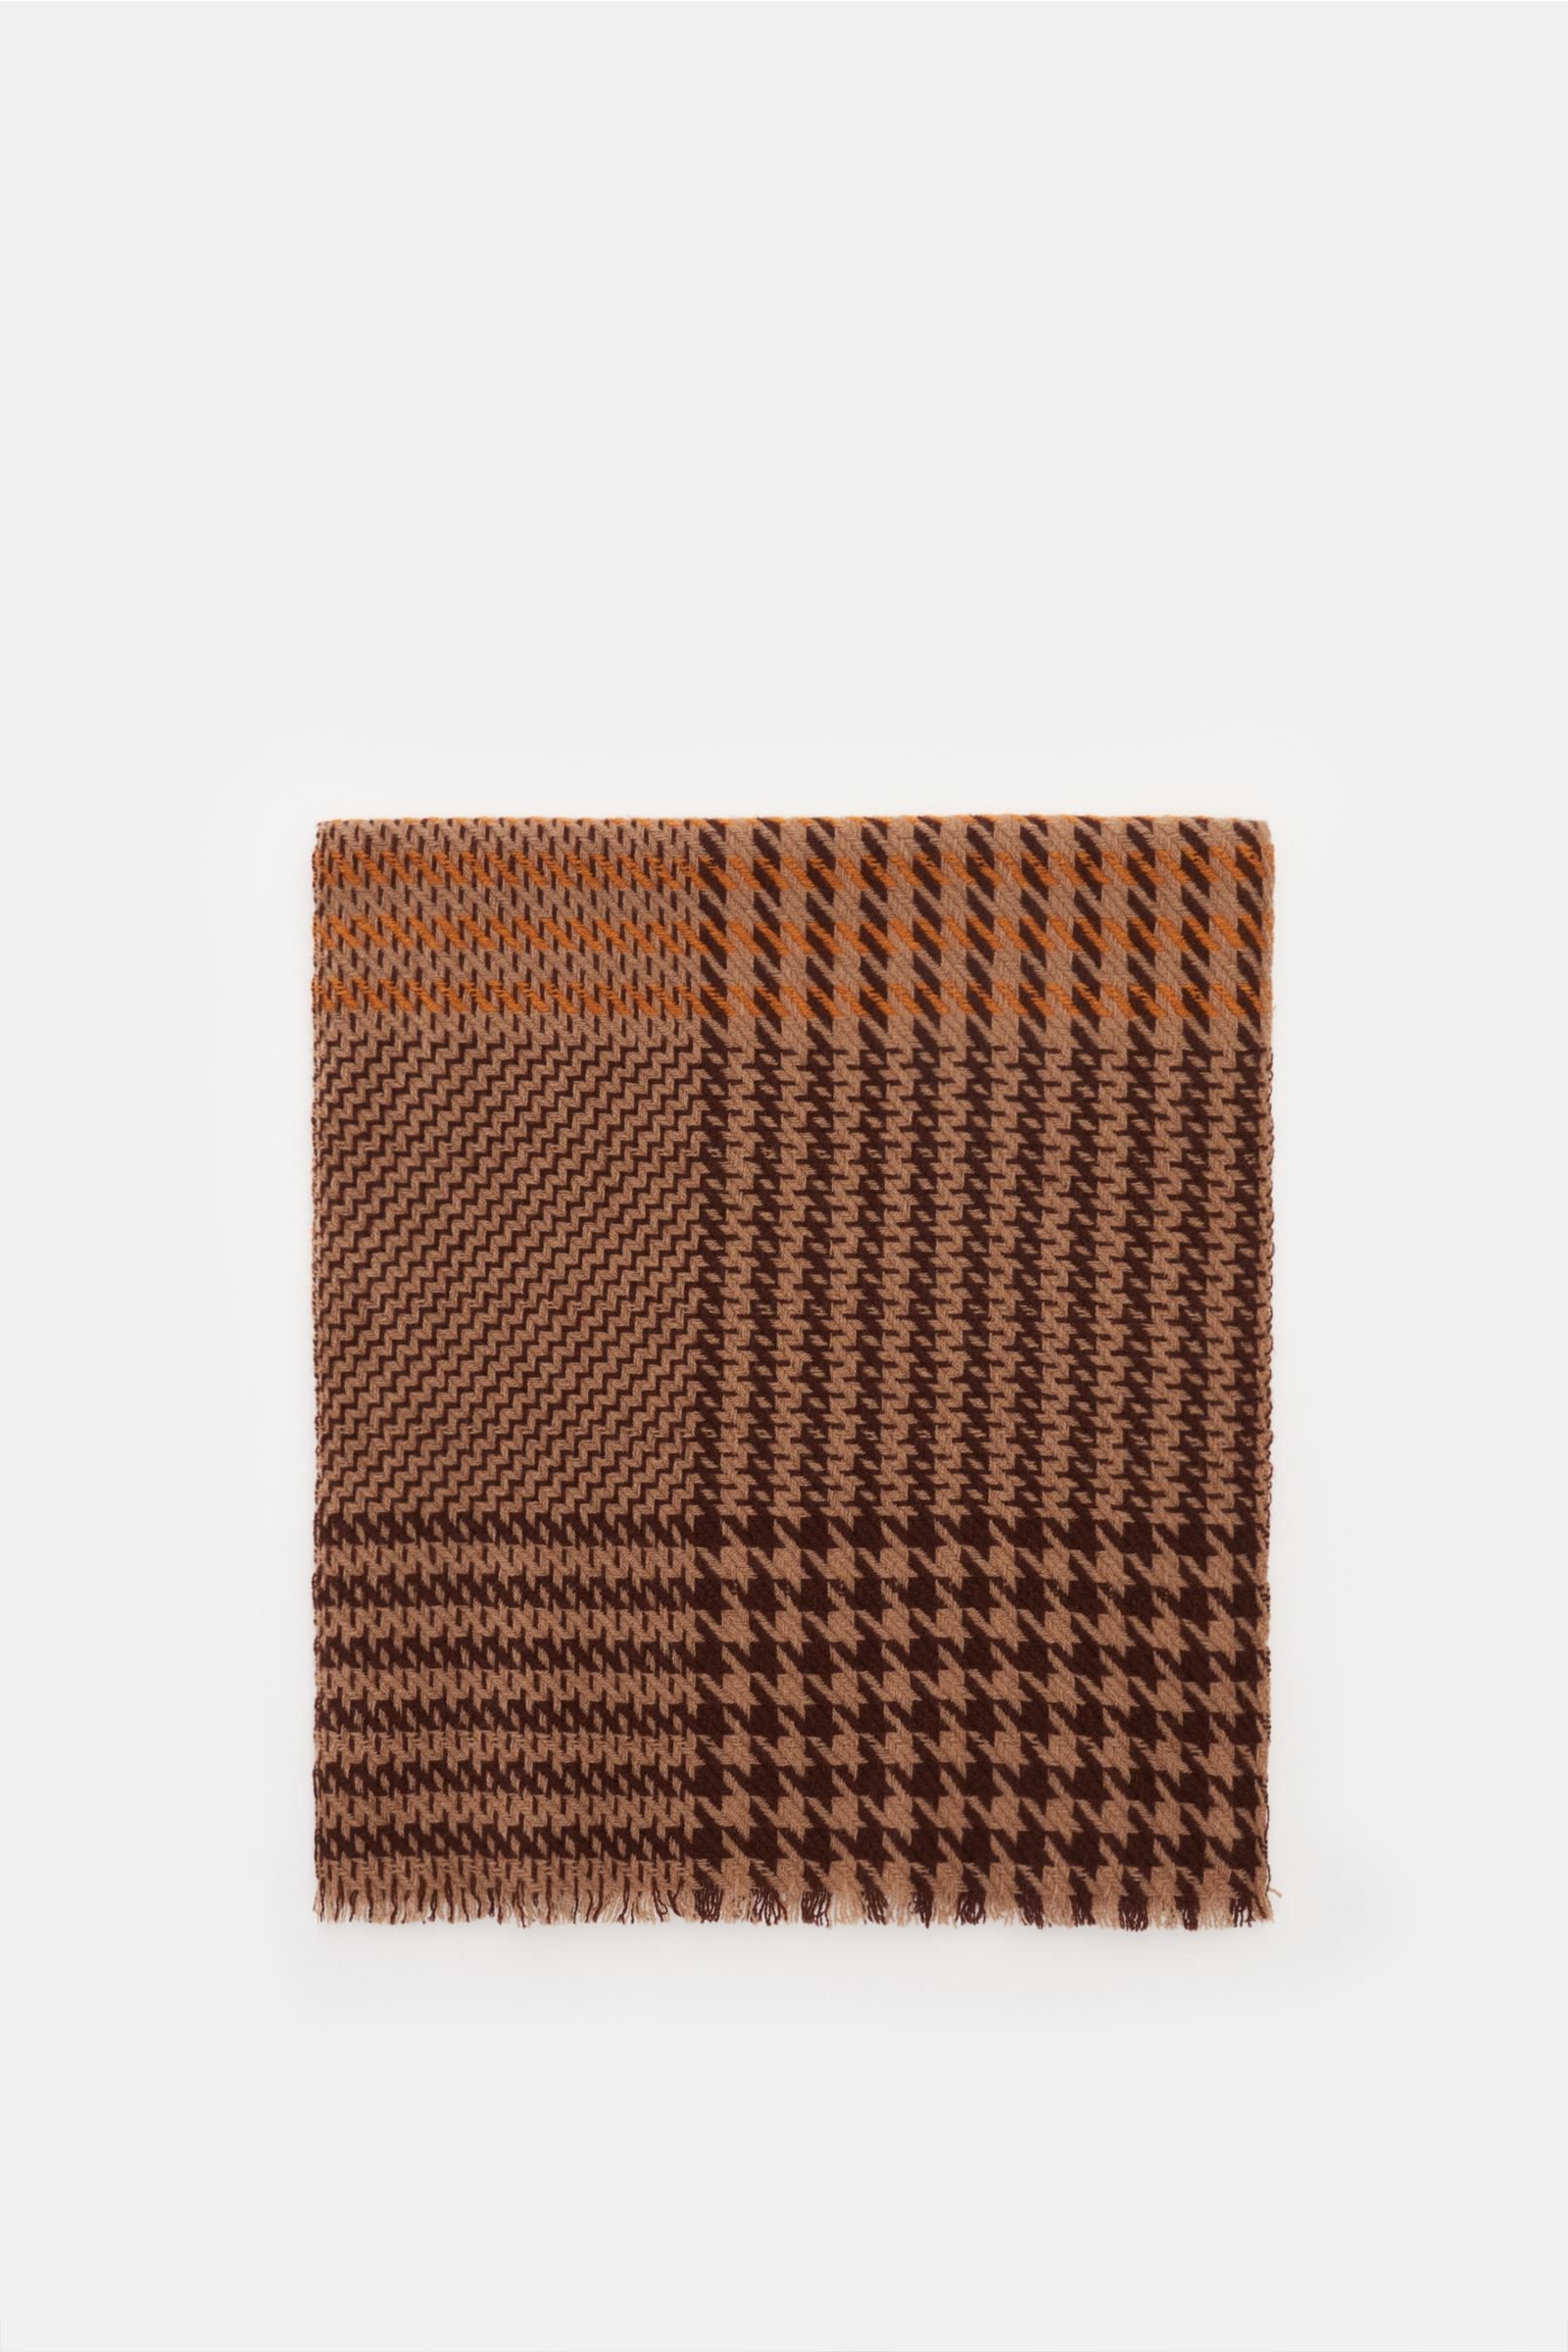 Cashmere scarf light brown/orange, patterned